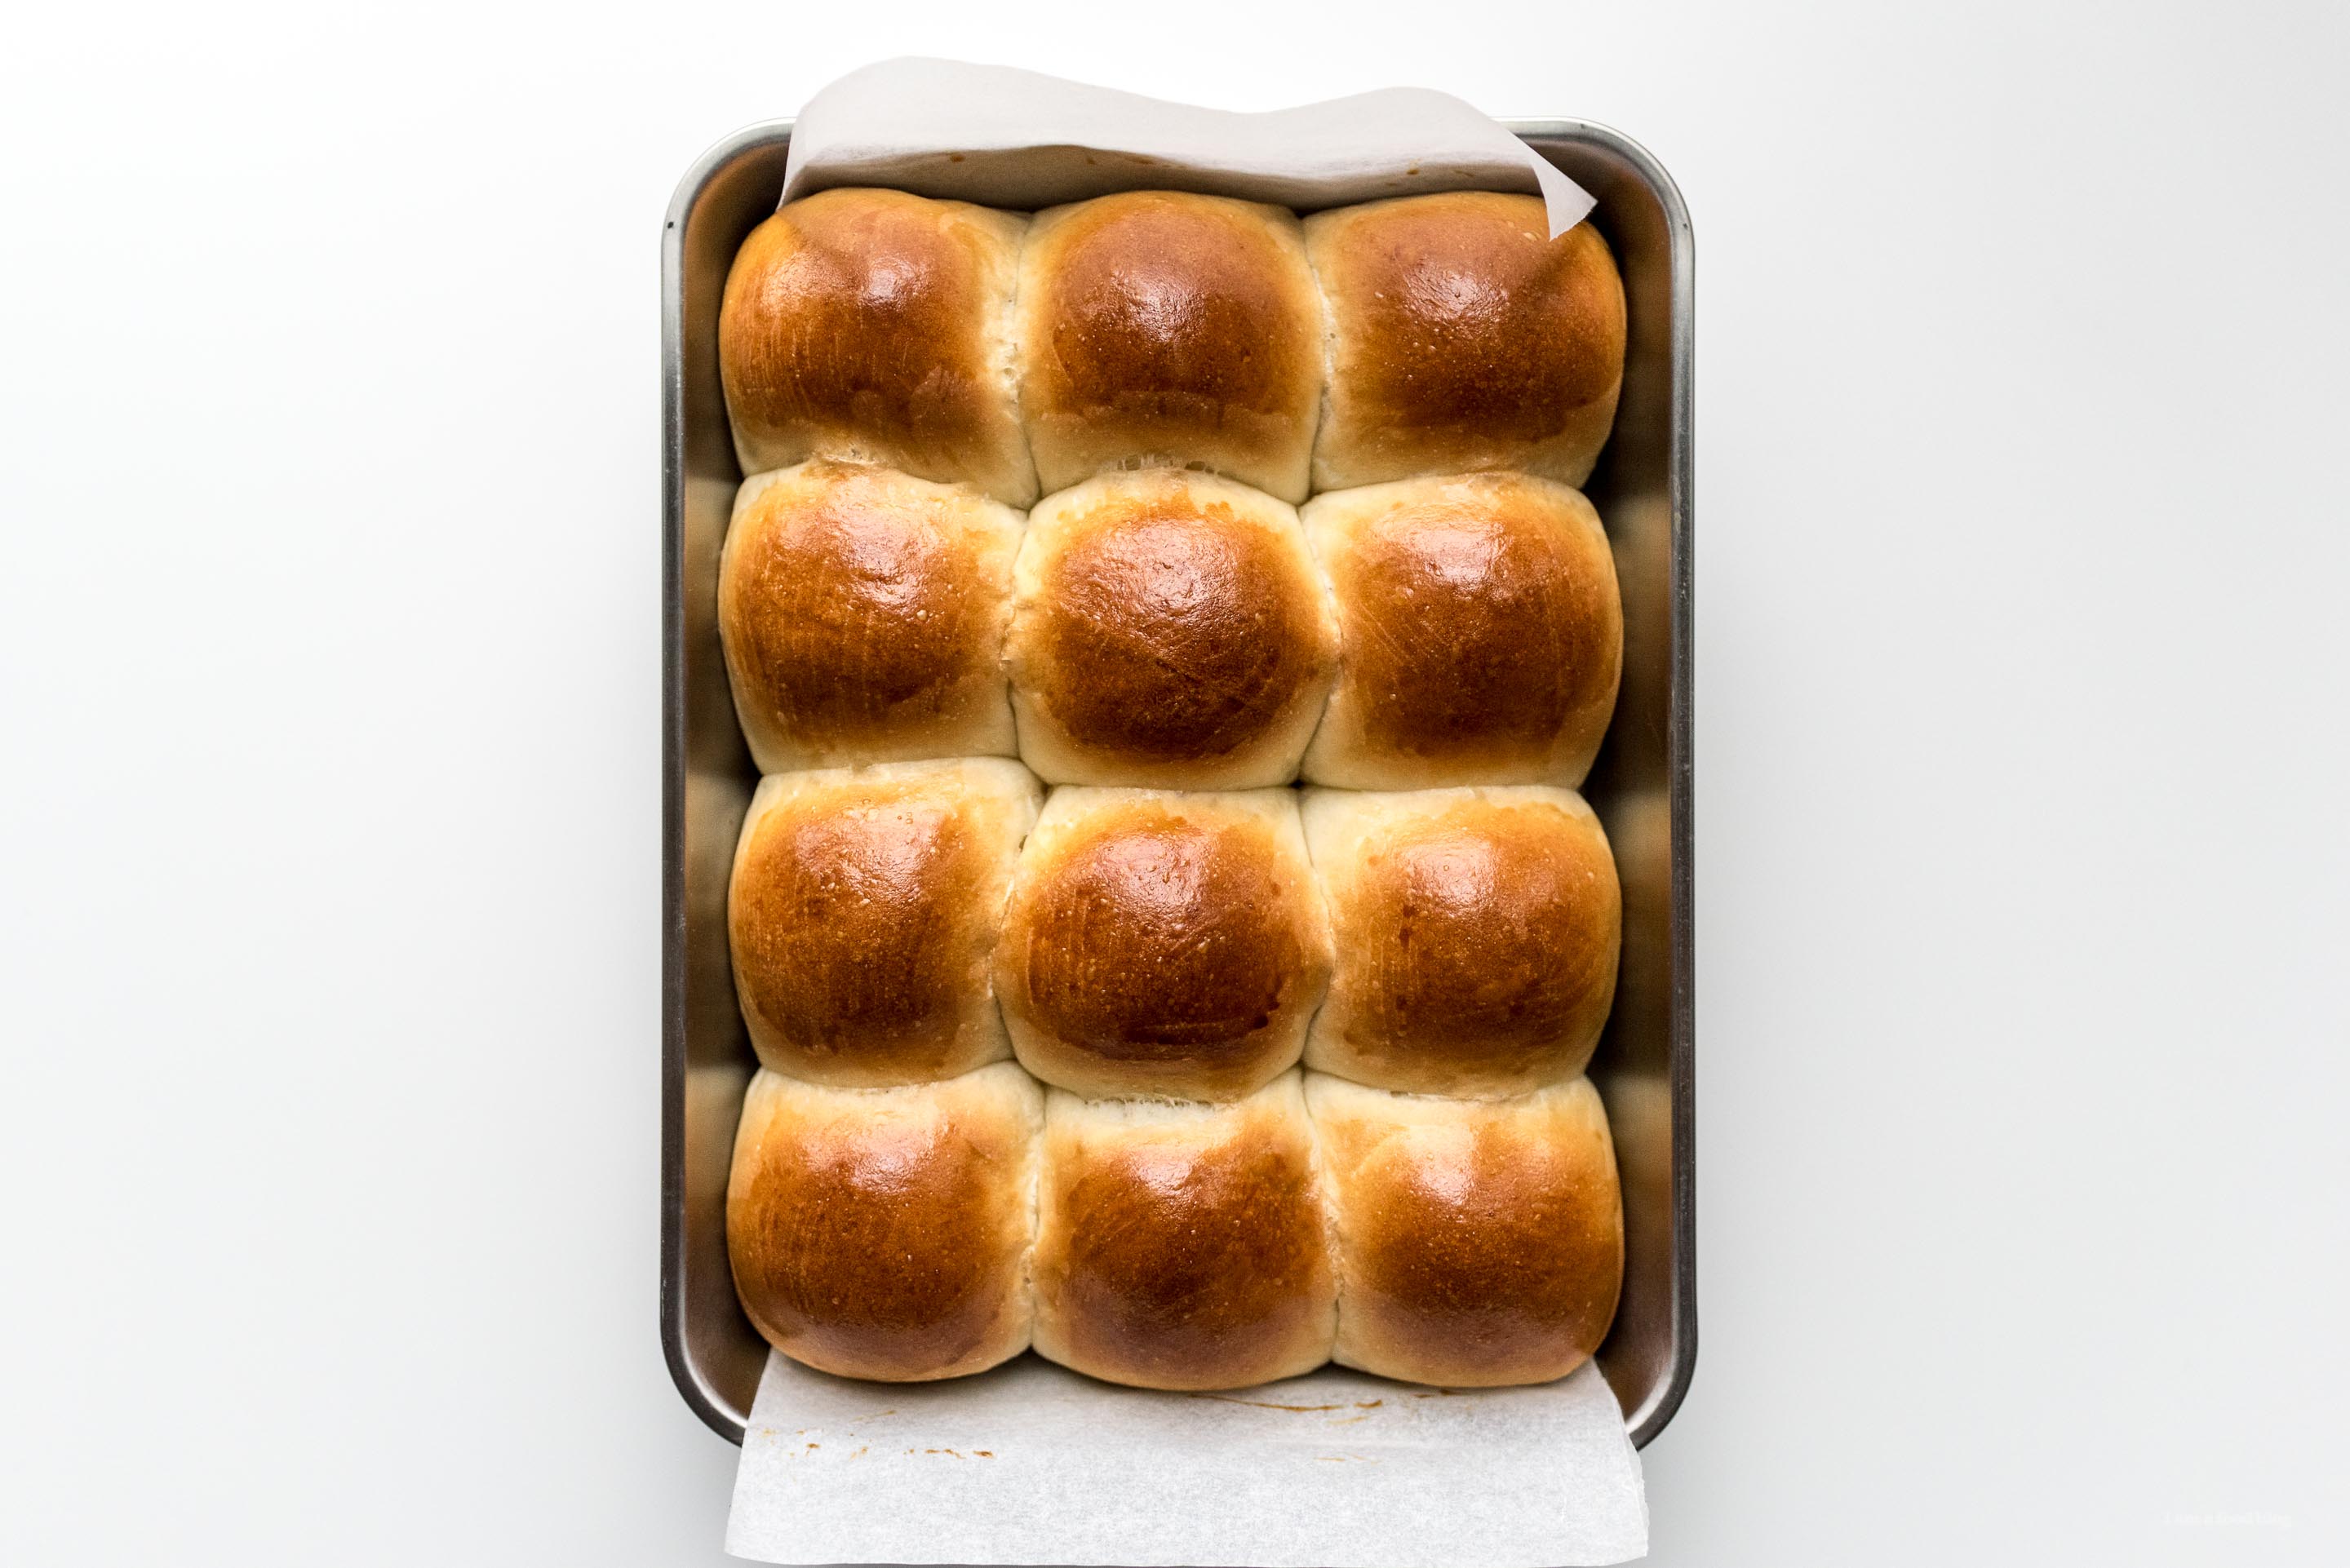 tous les petits pains bagel wwww.http://elcomensal.es/